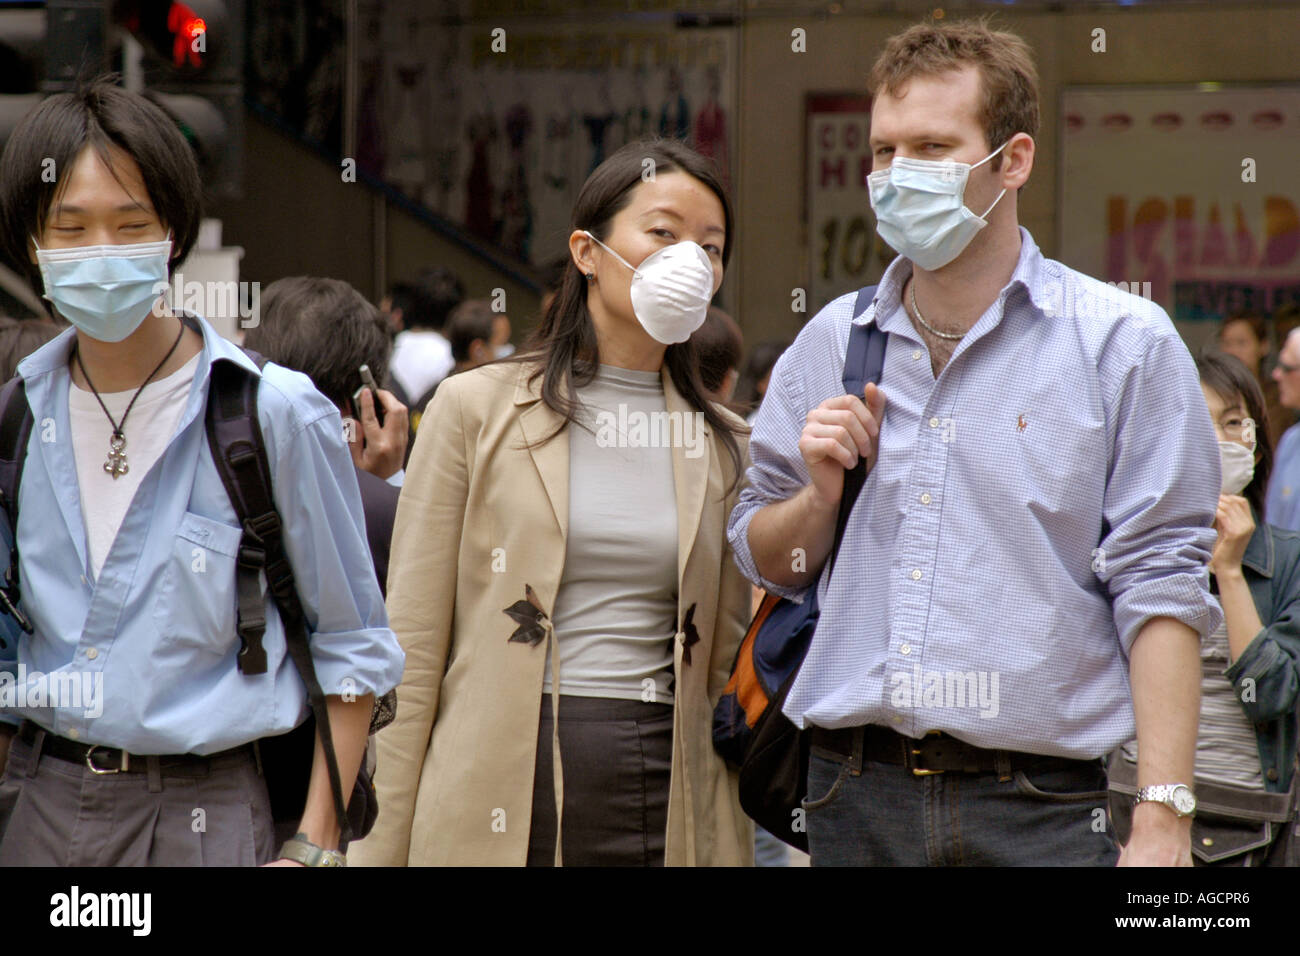 Face masks SARS outbreak Hong Kong Stock Photo, Royalty Free Image ...